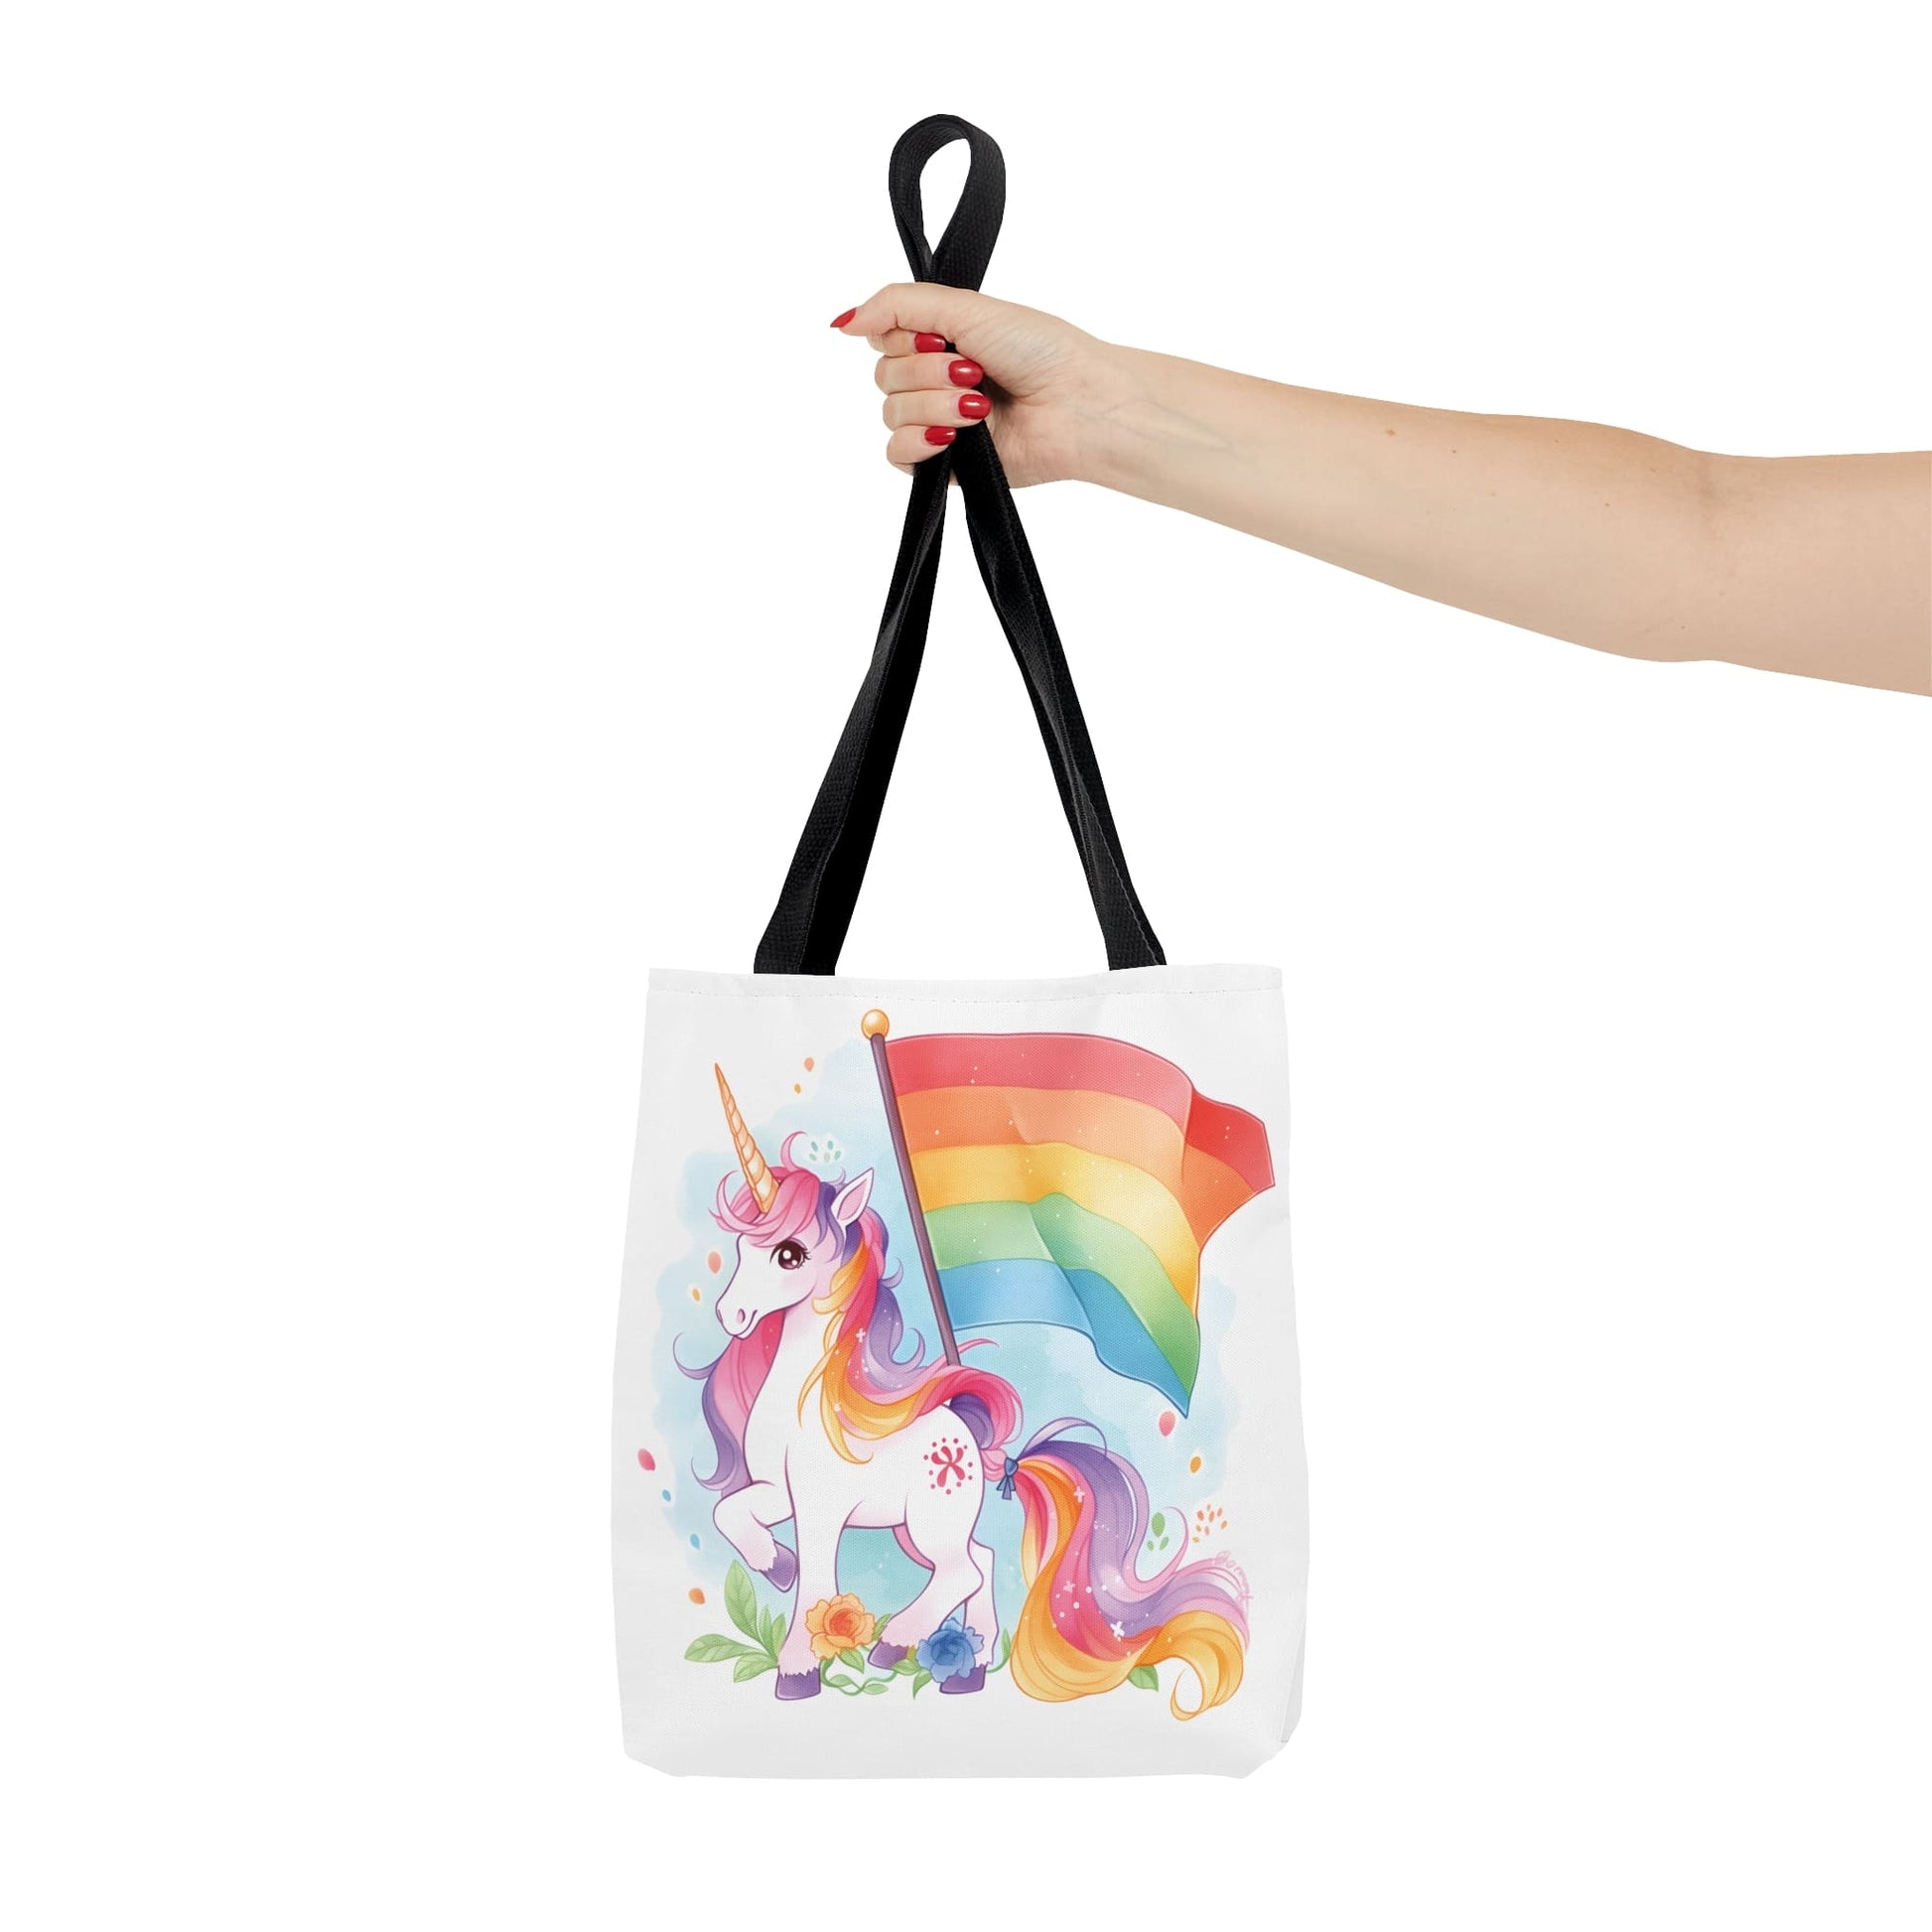 LGBTQ tote bag, cute rainbow unicorn bag, small